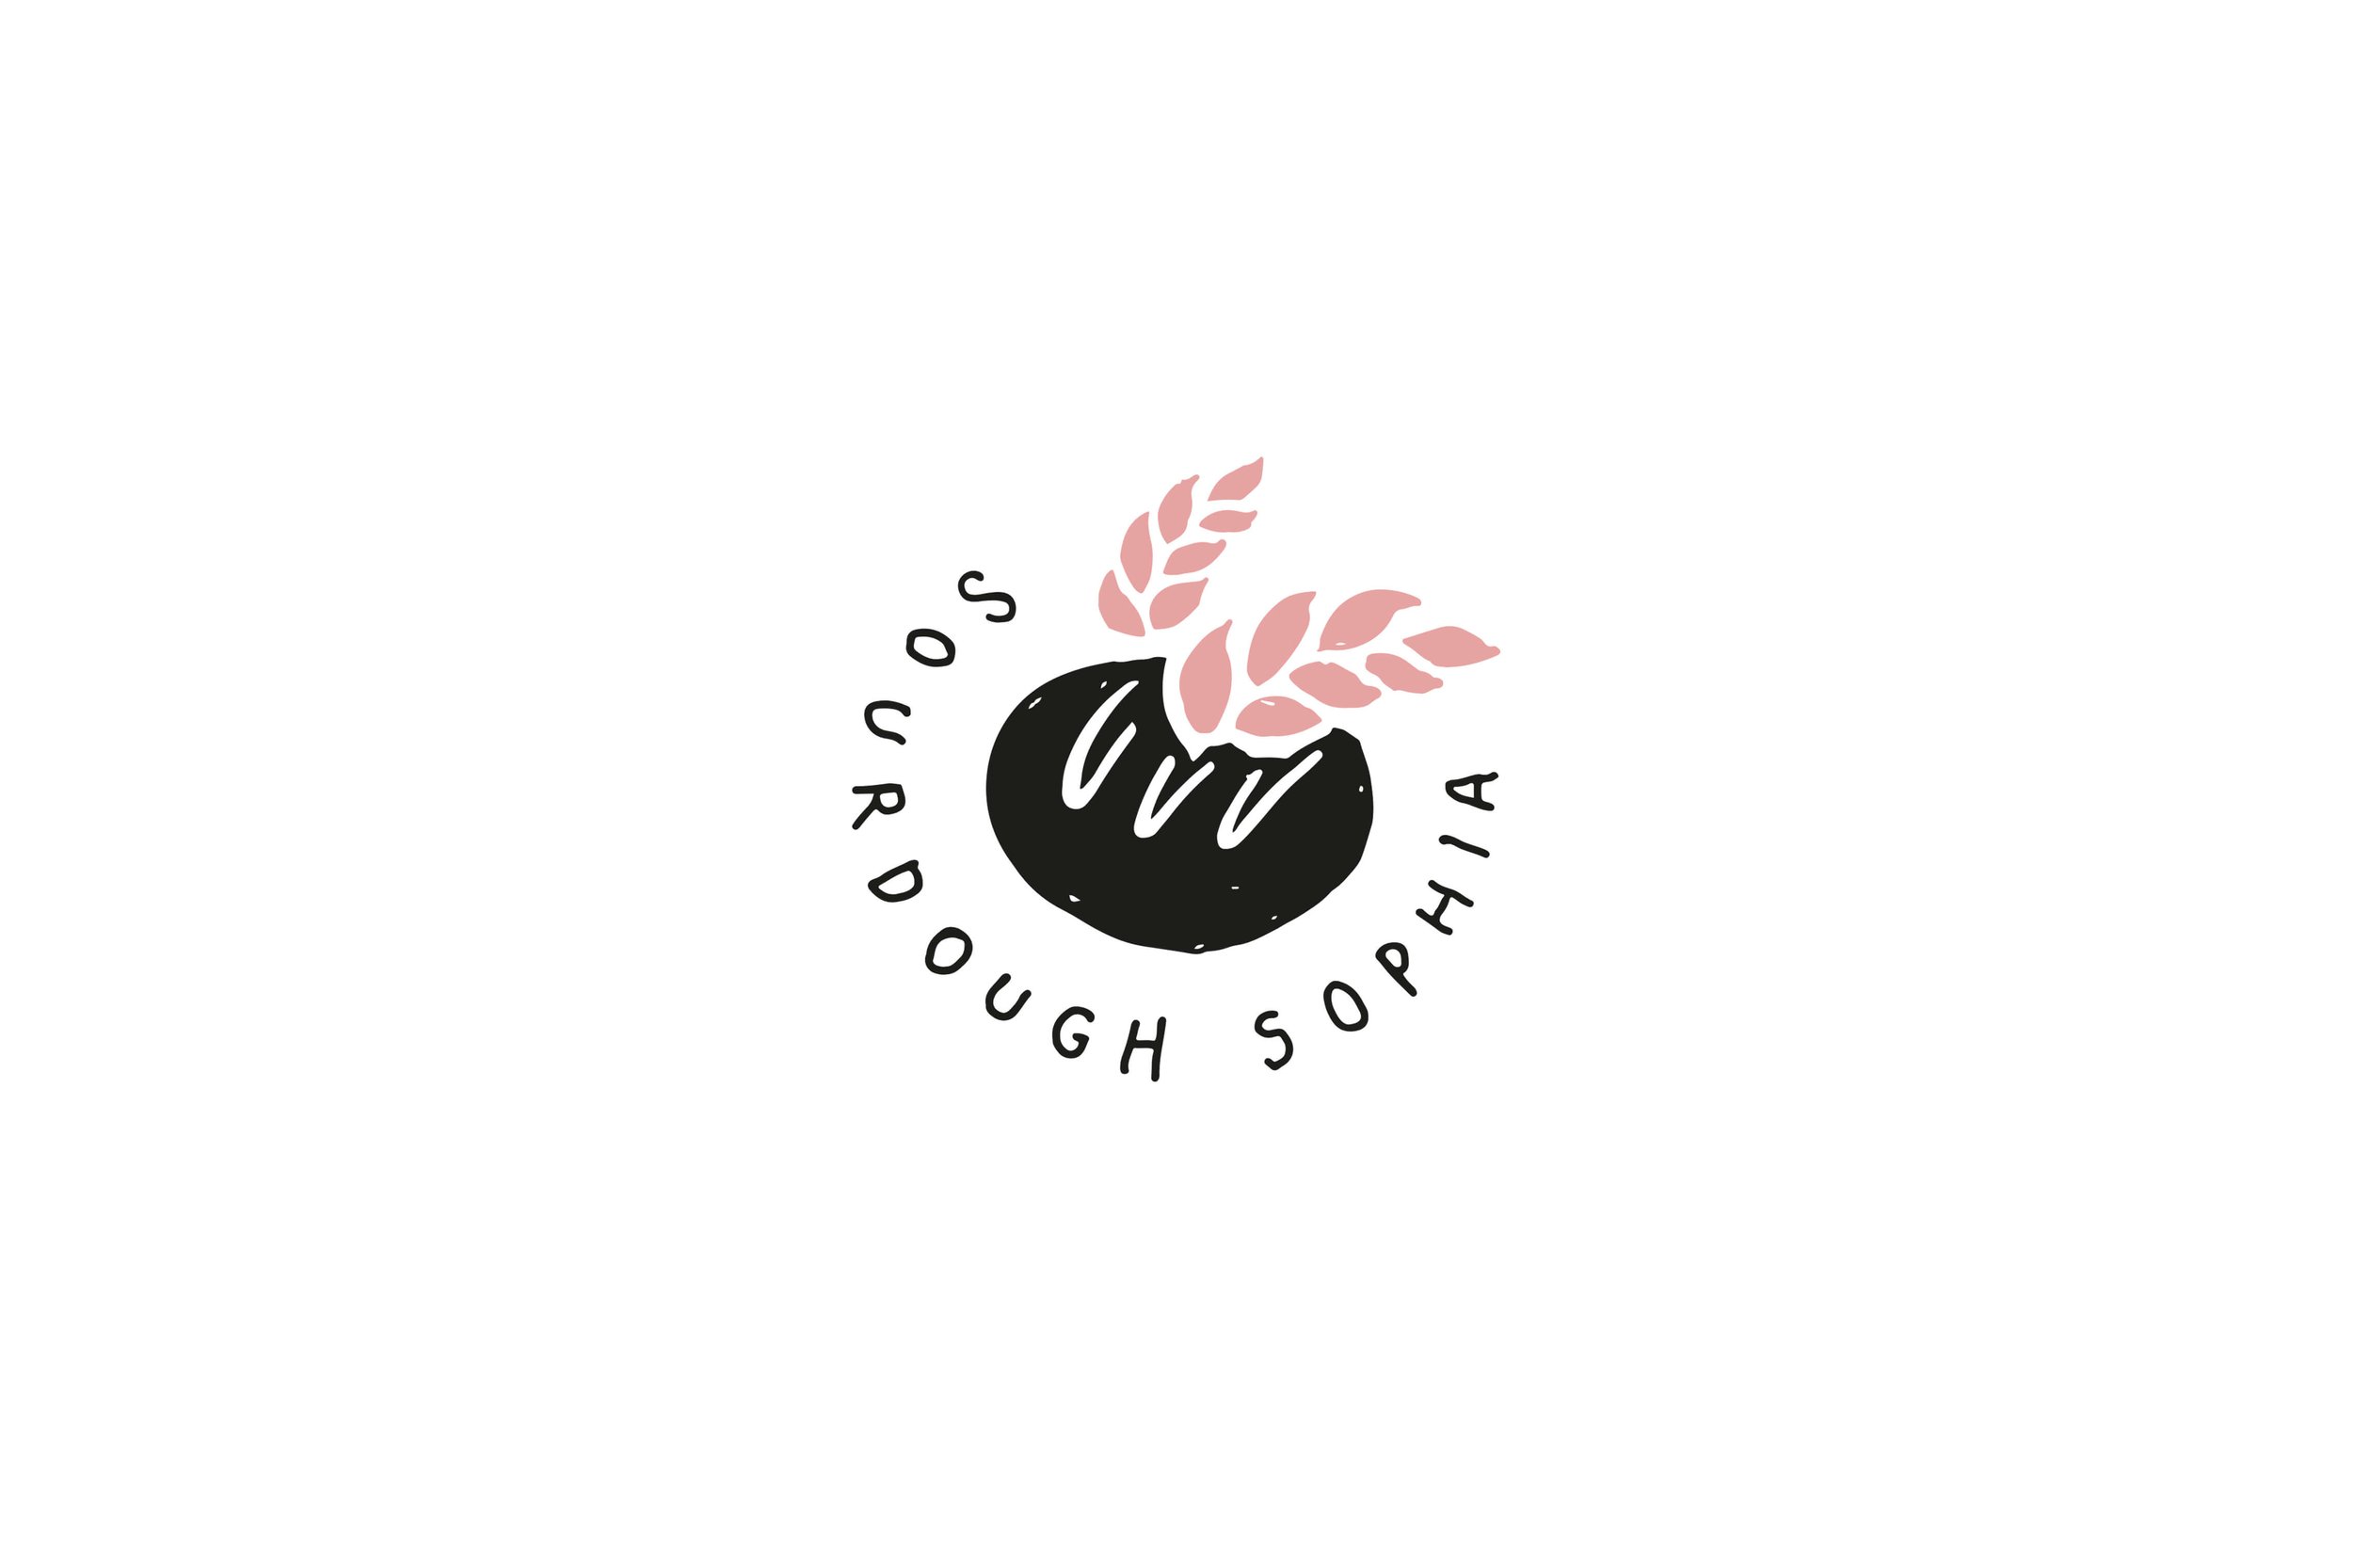  illustrated logo design for bakery Sourdough Sophia 